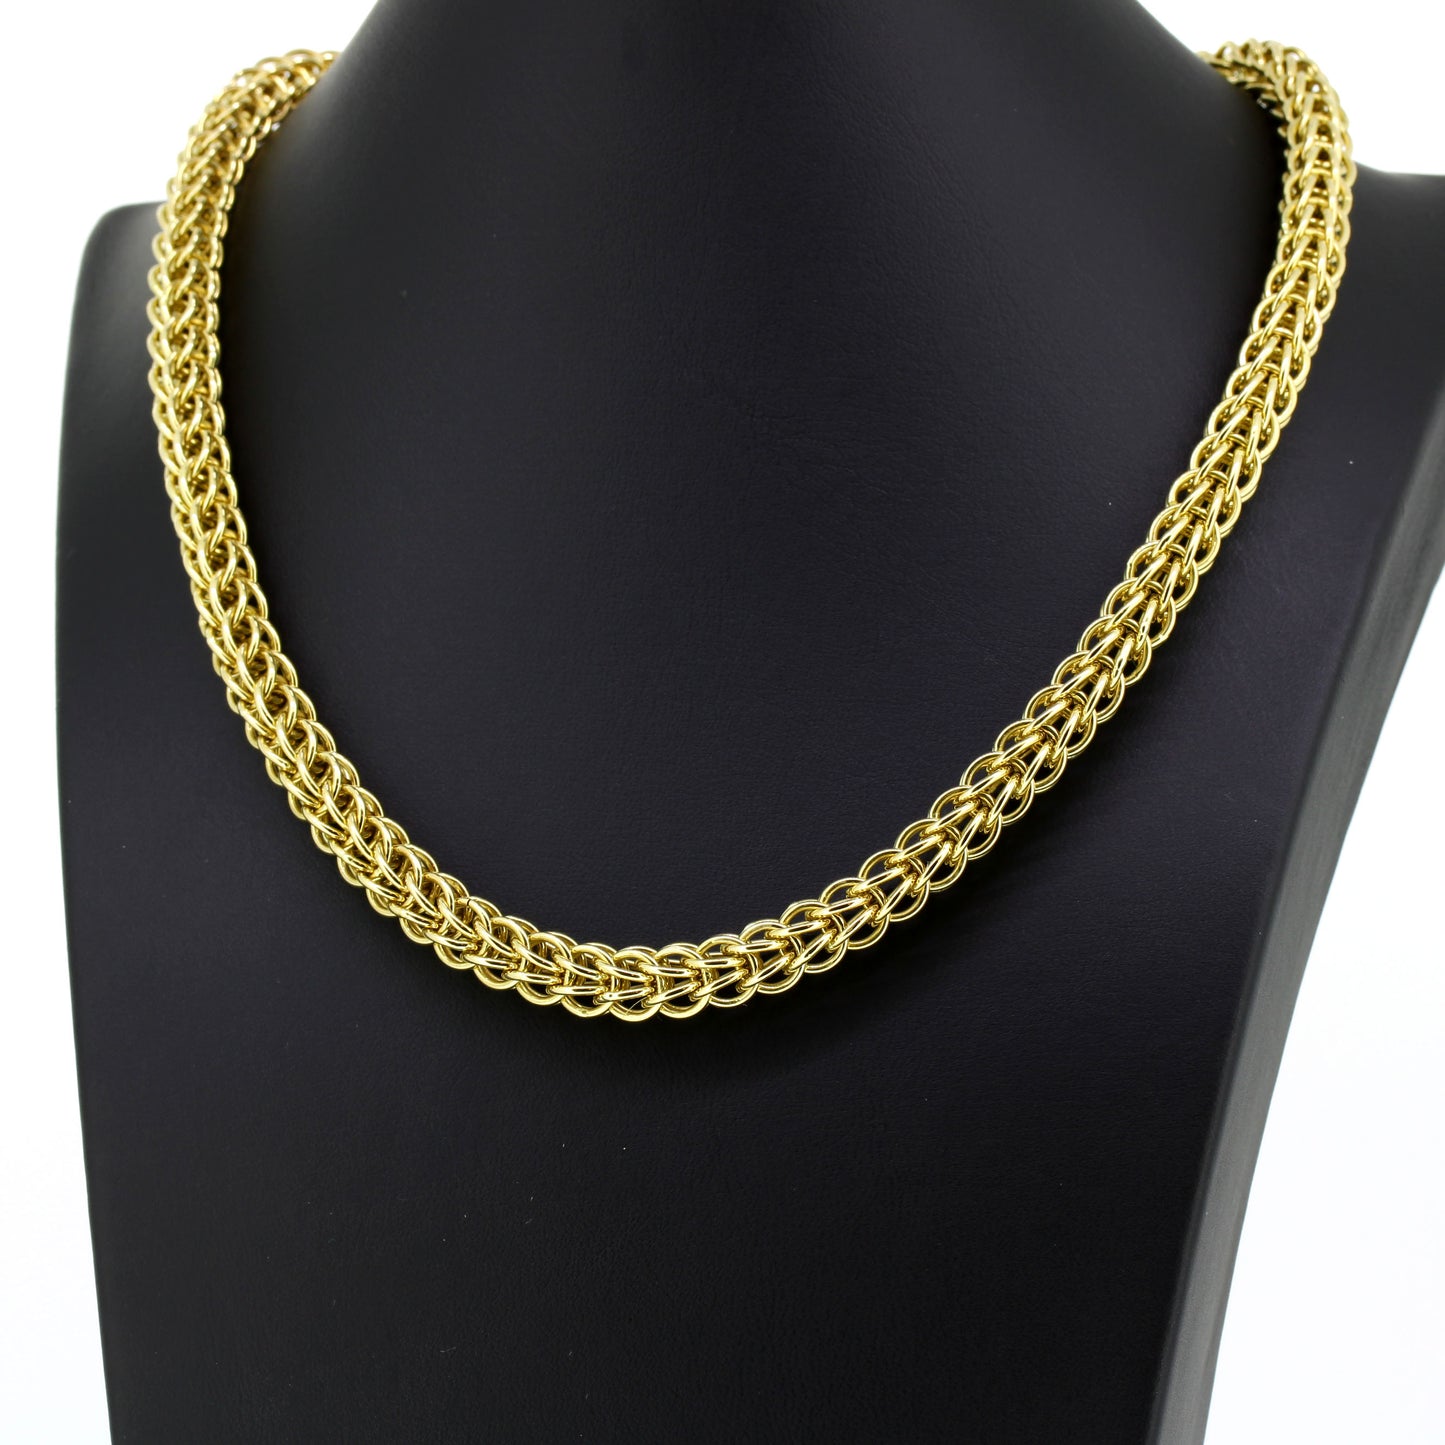 Halskette geflochten 585 Gold 14 Kt Gelbgold - Wert 3130,-